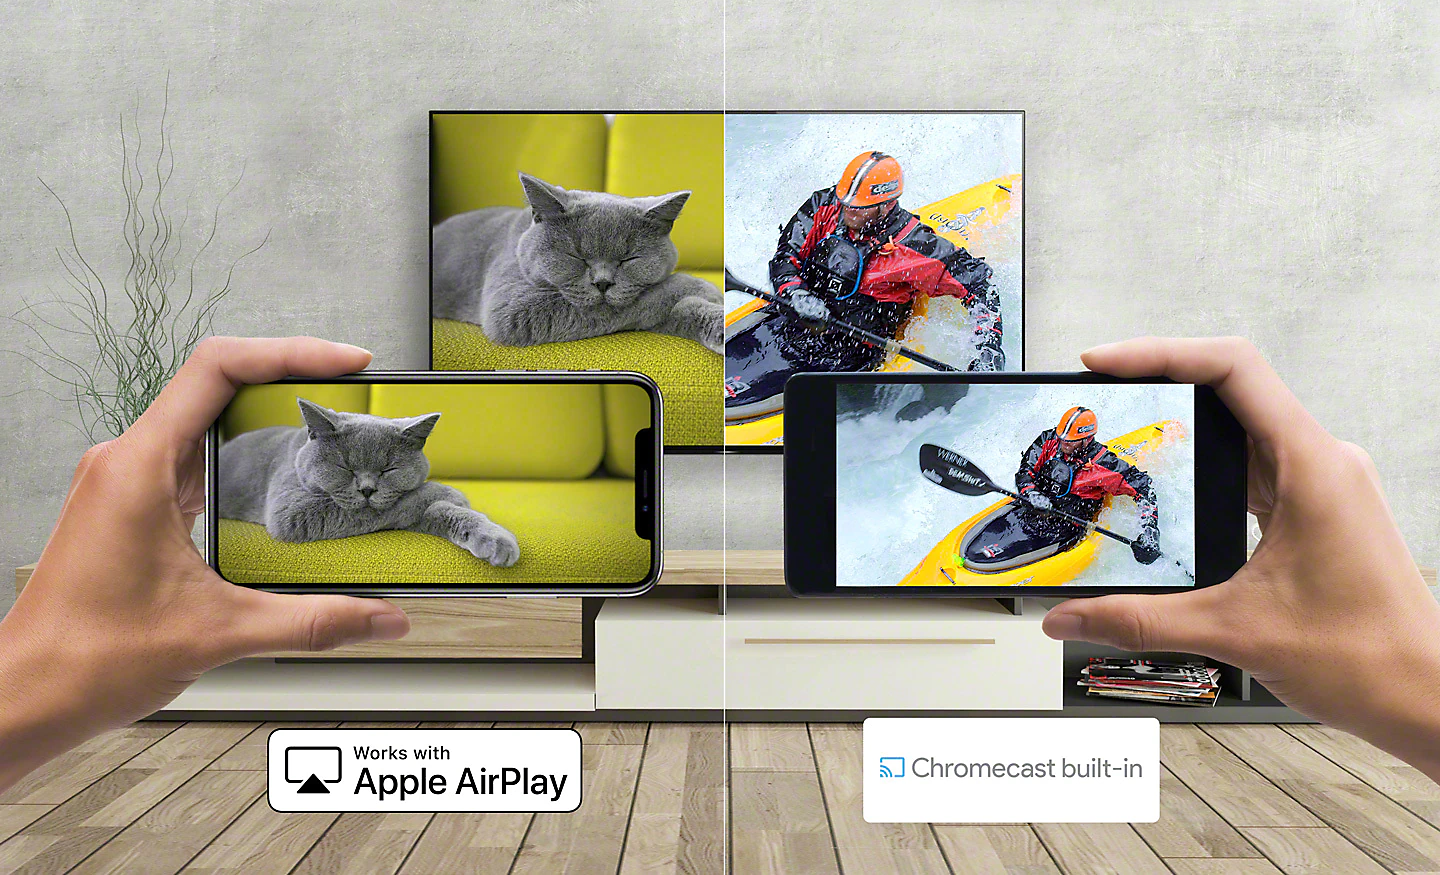 Images d'un chat et d'un canoéiste diffusées depuis un smartphone sur un téléviseur